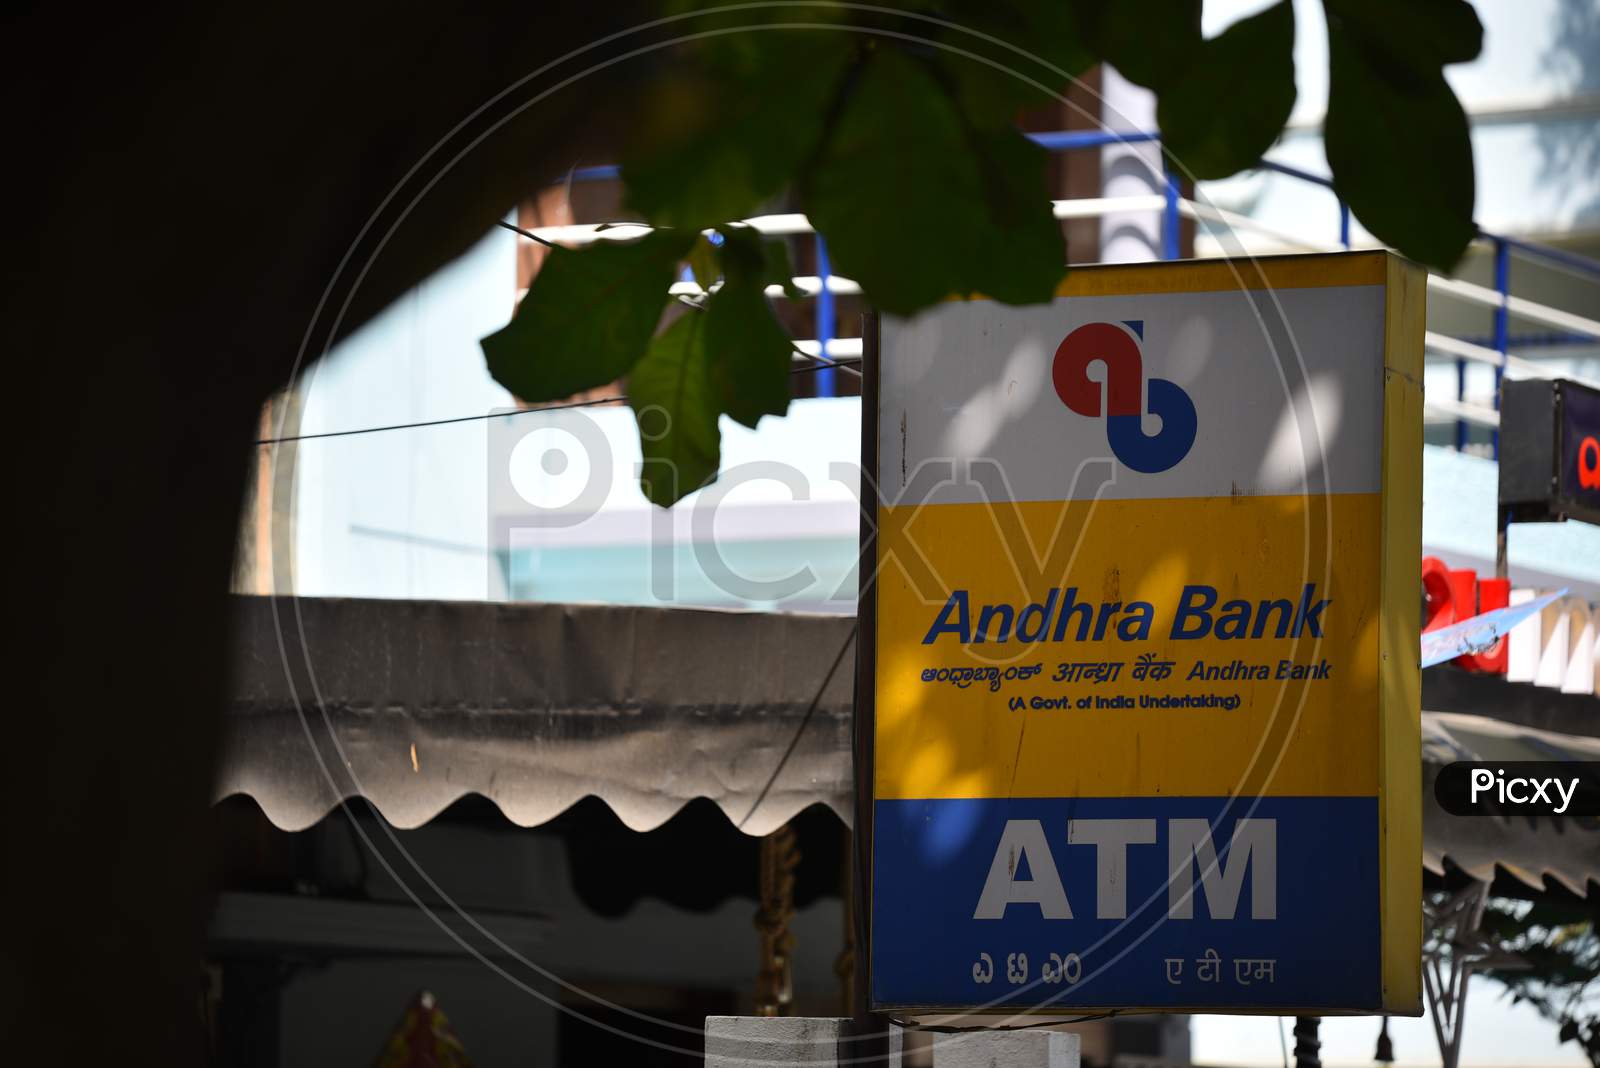 Andhra Bank ATM, HSR Layout